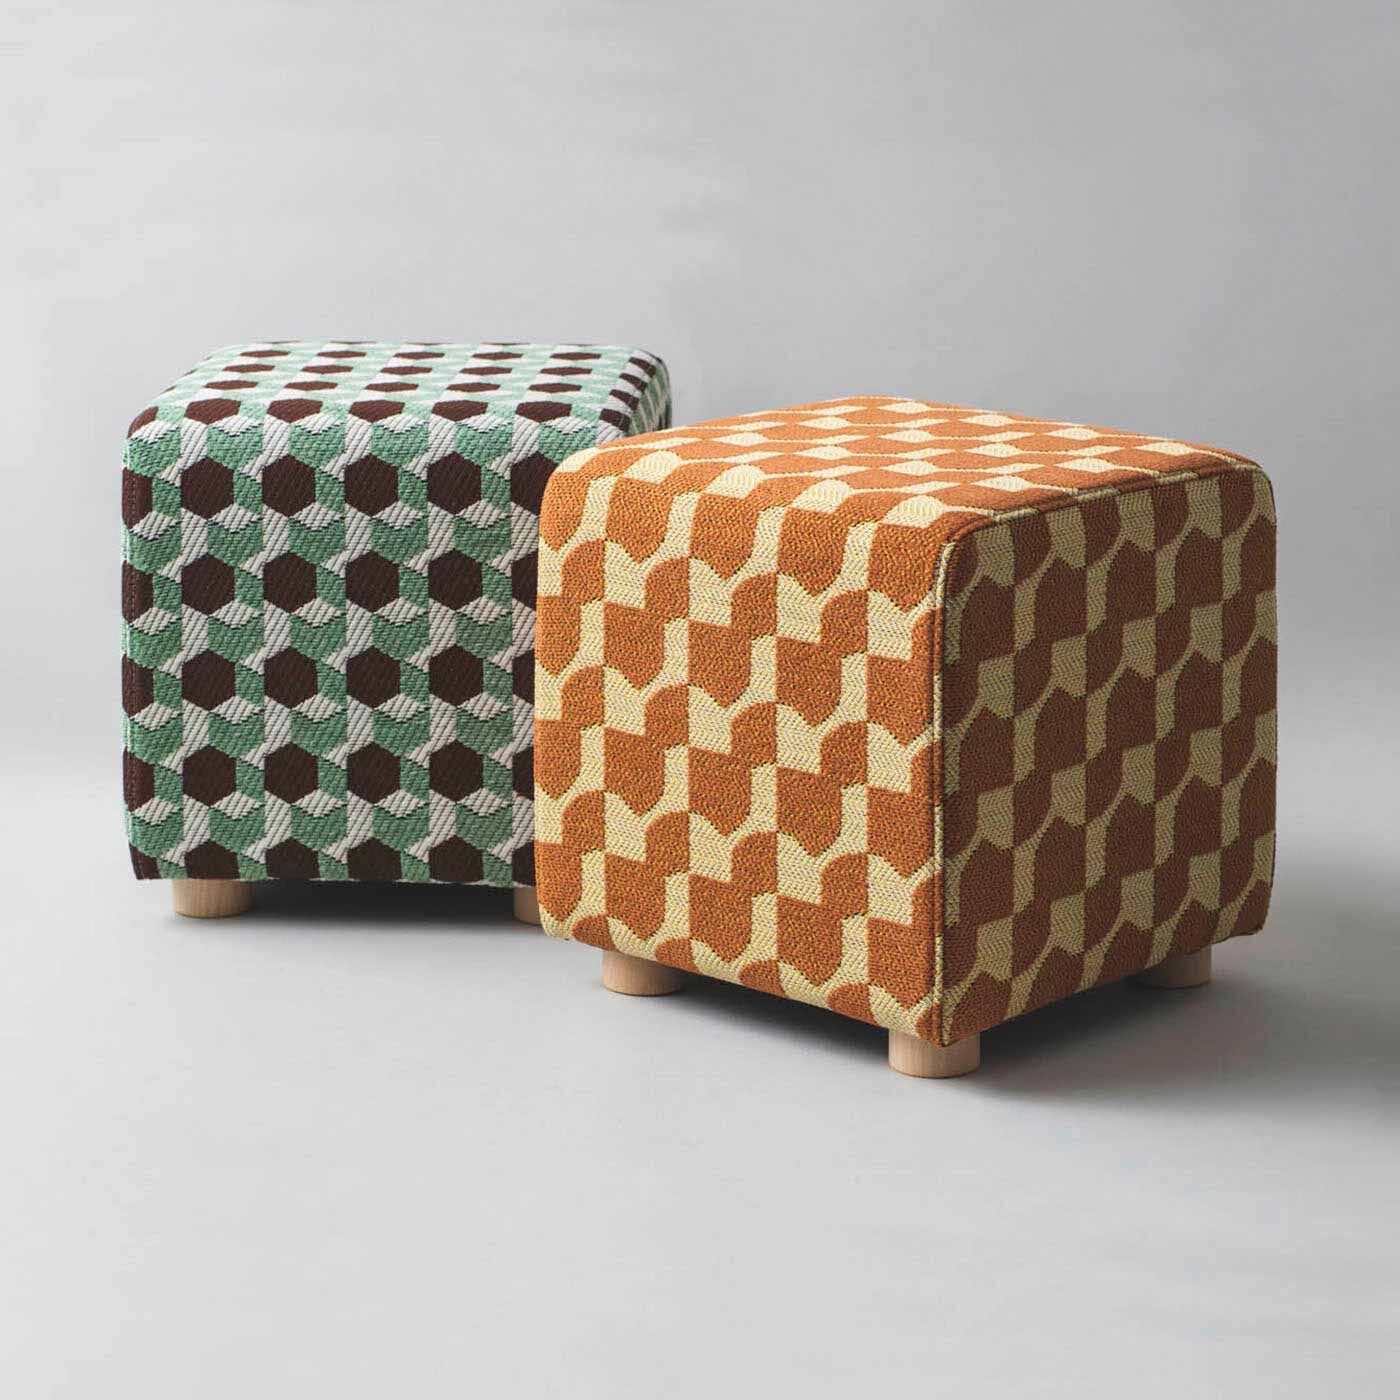 ＆Stories|テキスタイルデザイナーと家具職人が作った 播州ジャカード織のスツール〈チョコミント色〉|梶原さんがこのスツールのために新たにデザインした柄は 2 種類。